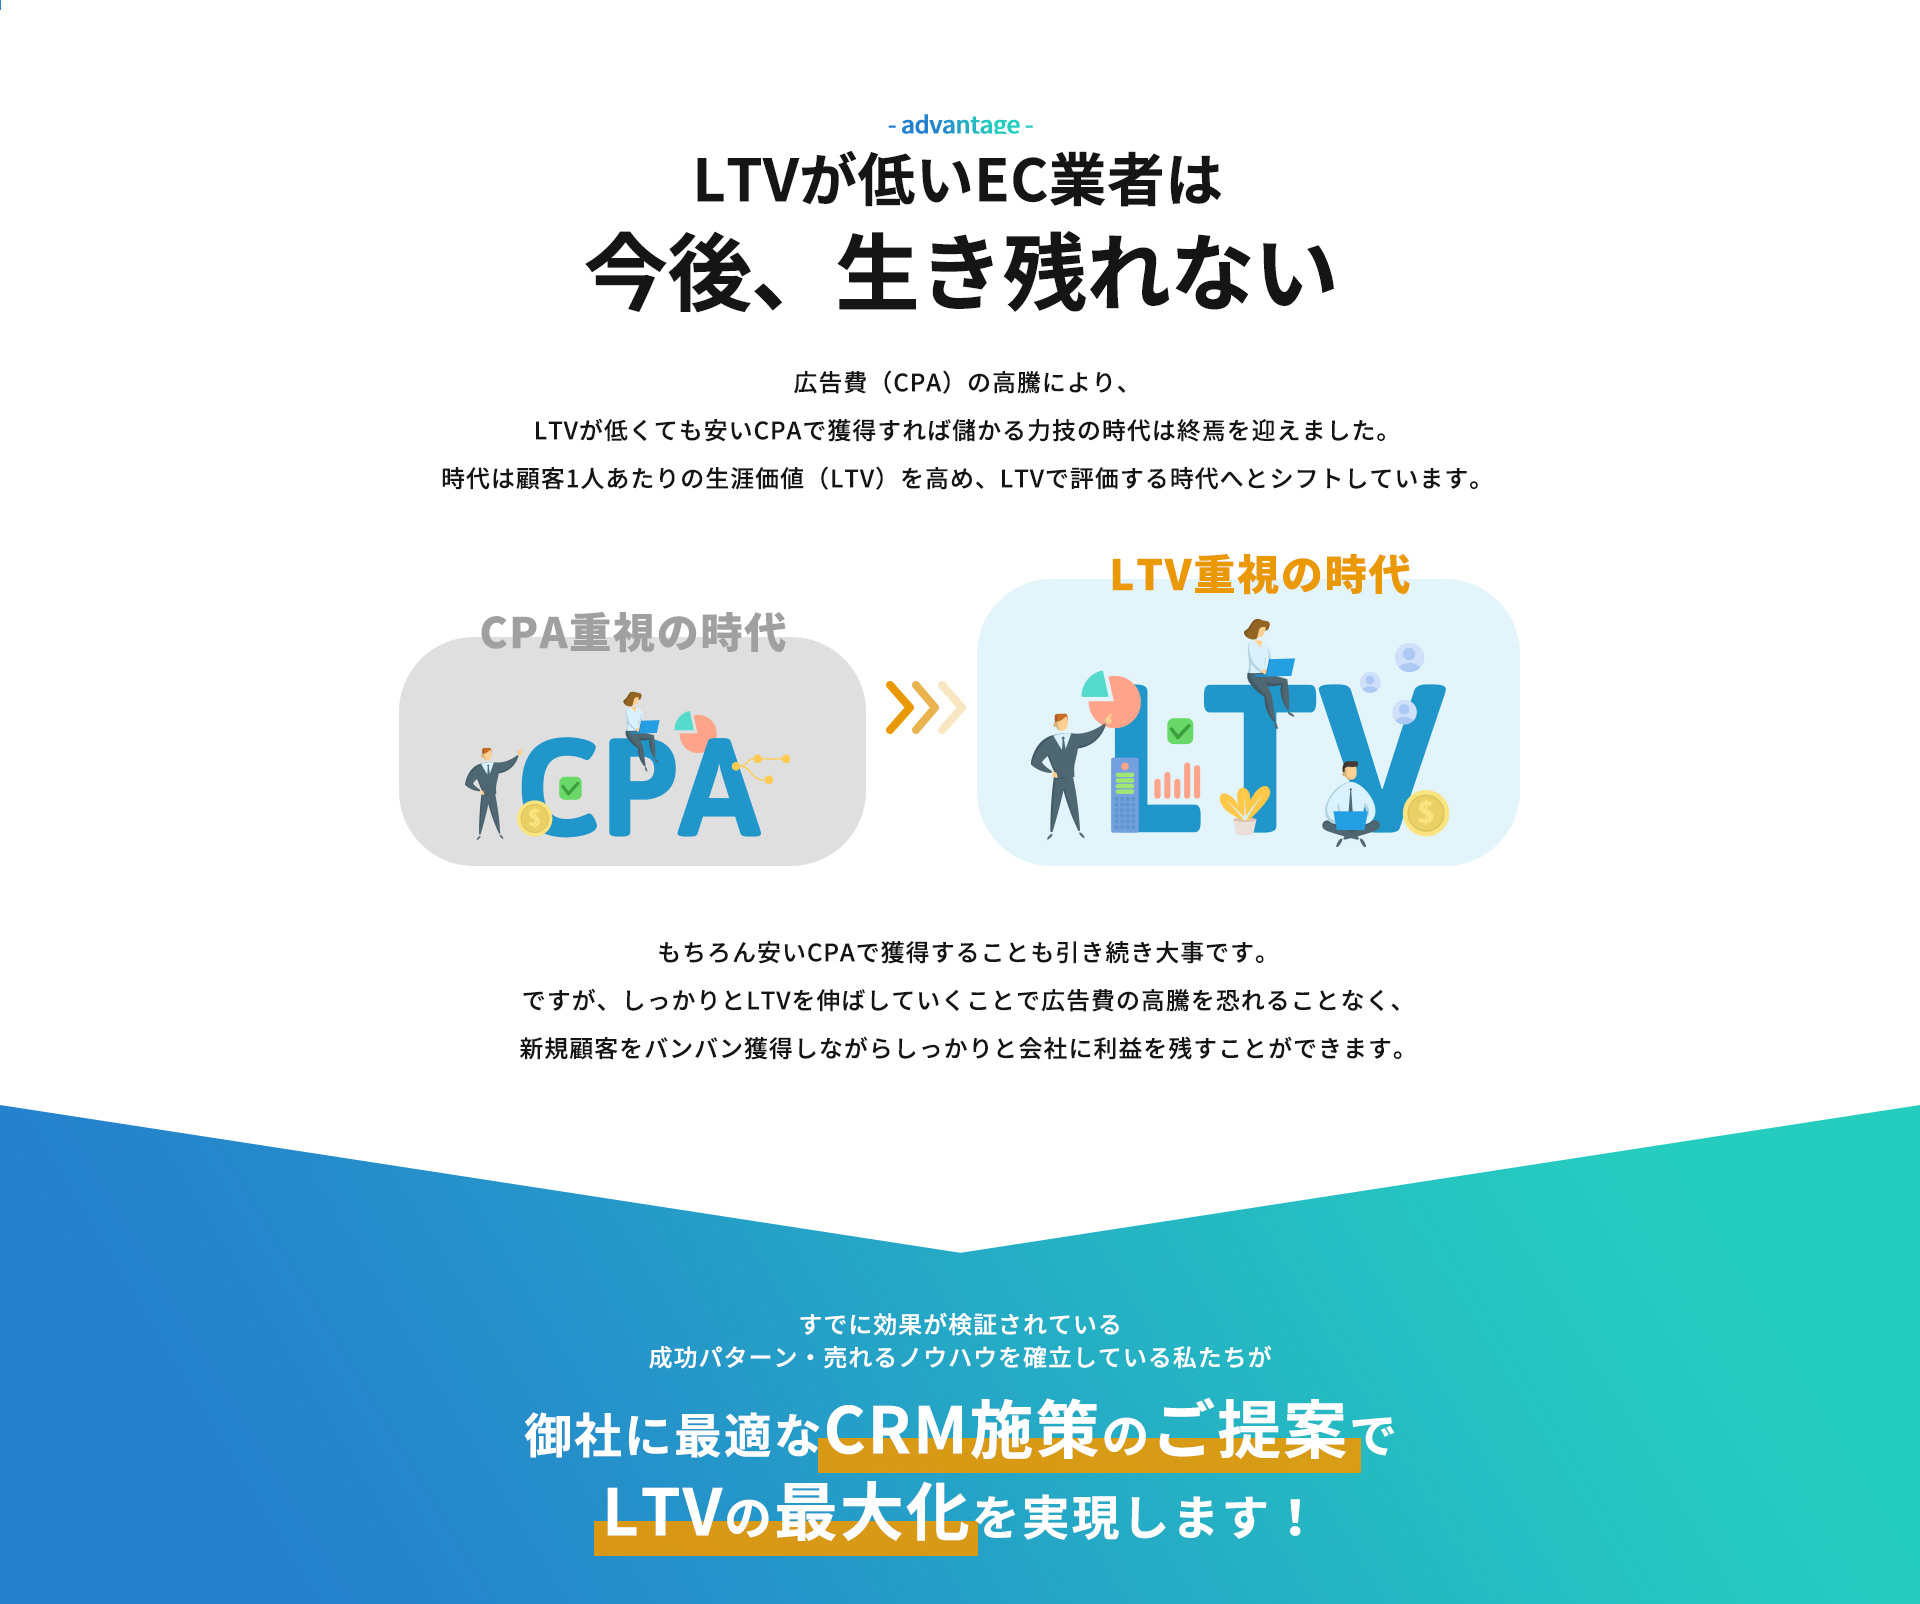 LTVが低いEC業者は広告費（CPA）の高騰により、LTVが低くても安いCPAで獲得すれば儲かる力技の時代は終焉を迎えました。
時代は顧客1人あたりの生涯価値（LTV）を高め、LTVで評価する時代へとシフトしています。もちろん安いCPAで獲得することも引き続き大事です。ですが、しっかりとLTVを伸ばしていくことで広告費の高騰を恐れることなく、新規顧客をバンバン獲得しながらしっかりと会社に利益を残すことができます。すでに効果が検証されている成功パターン・売れるノウハウを確立している私たちが御社に最適なCRM施策のご提案でLTVの最大化を実現します！